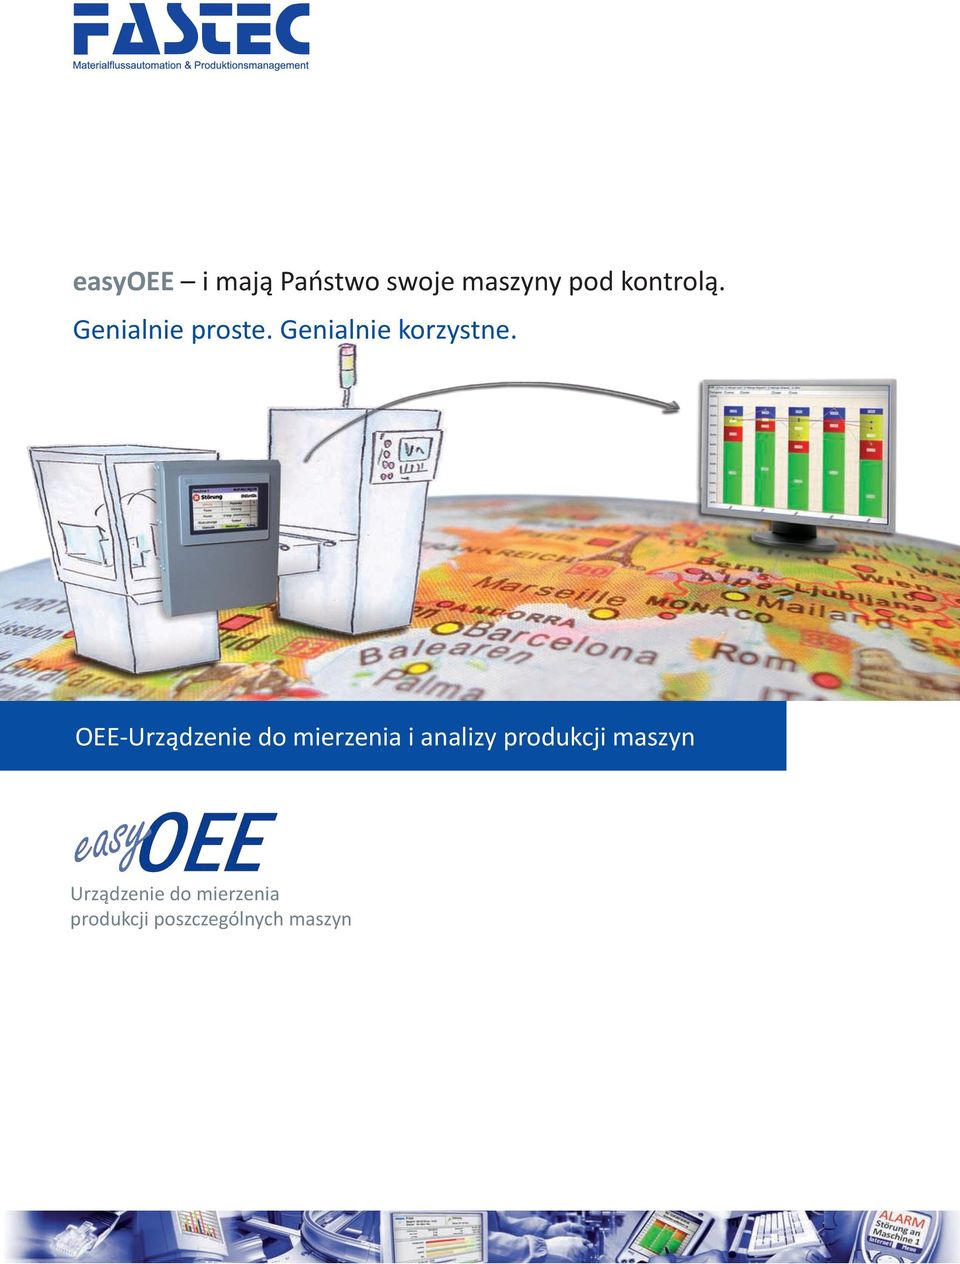 y OEE-Urządzenie do mierzenia i analizy produkcji